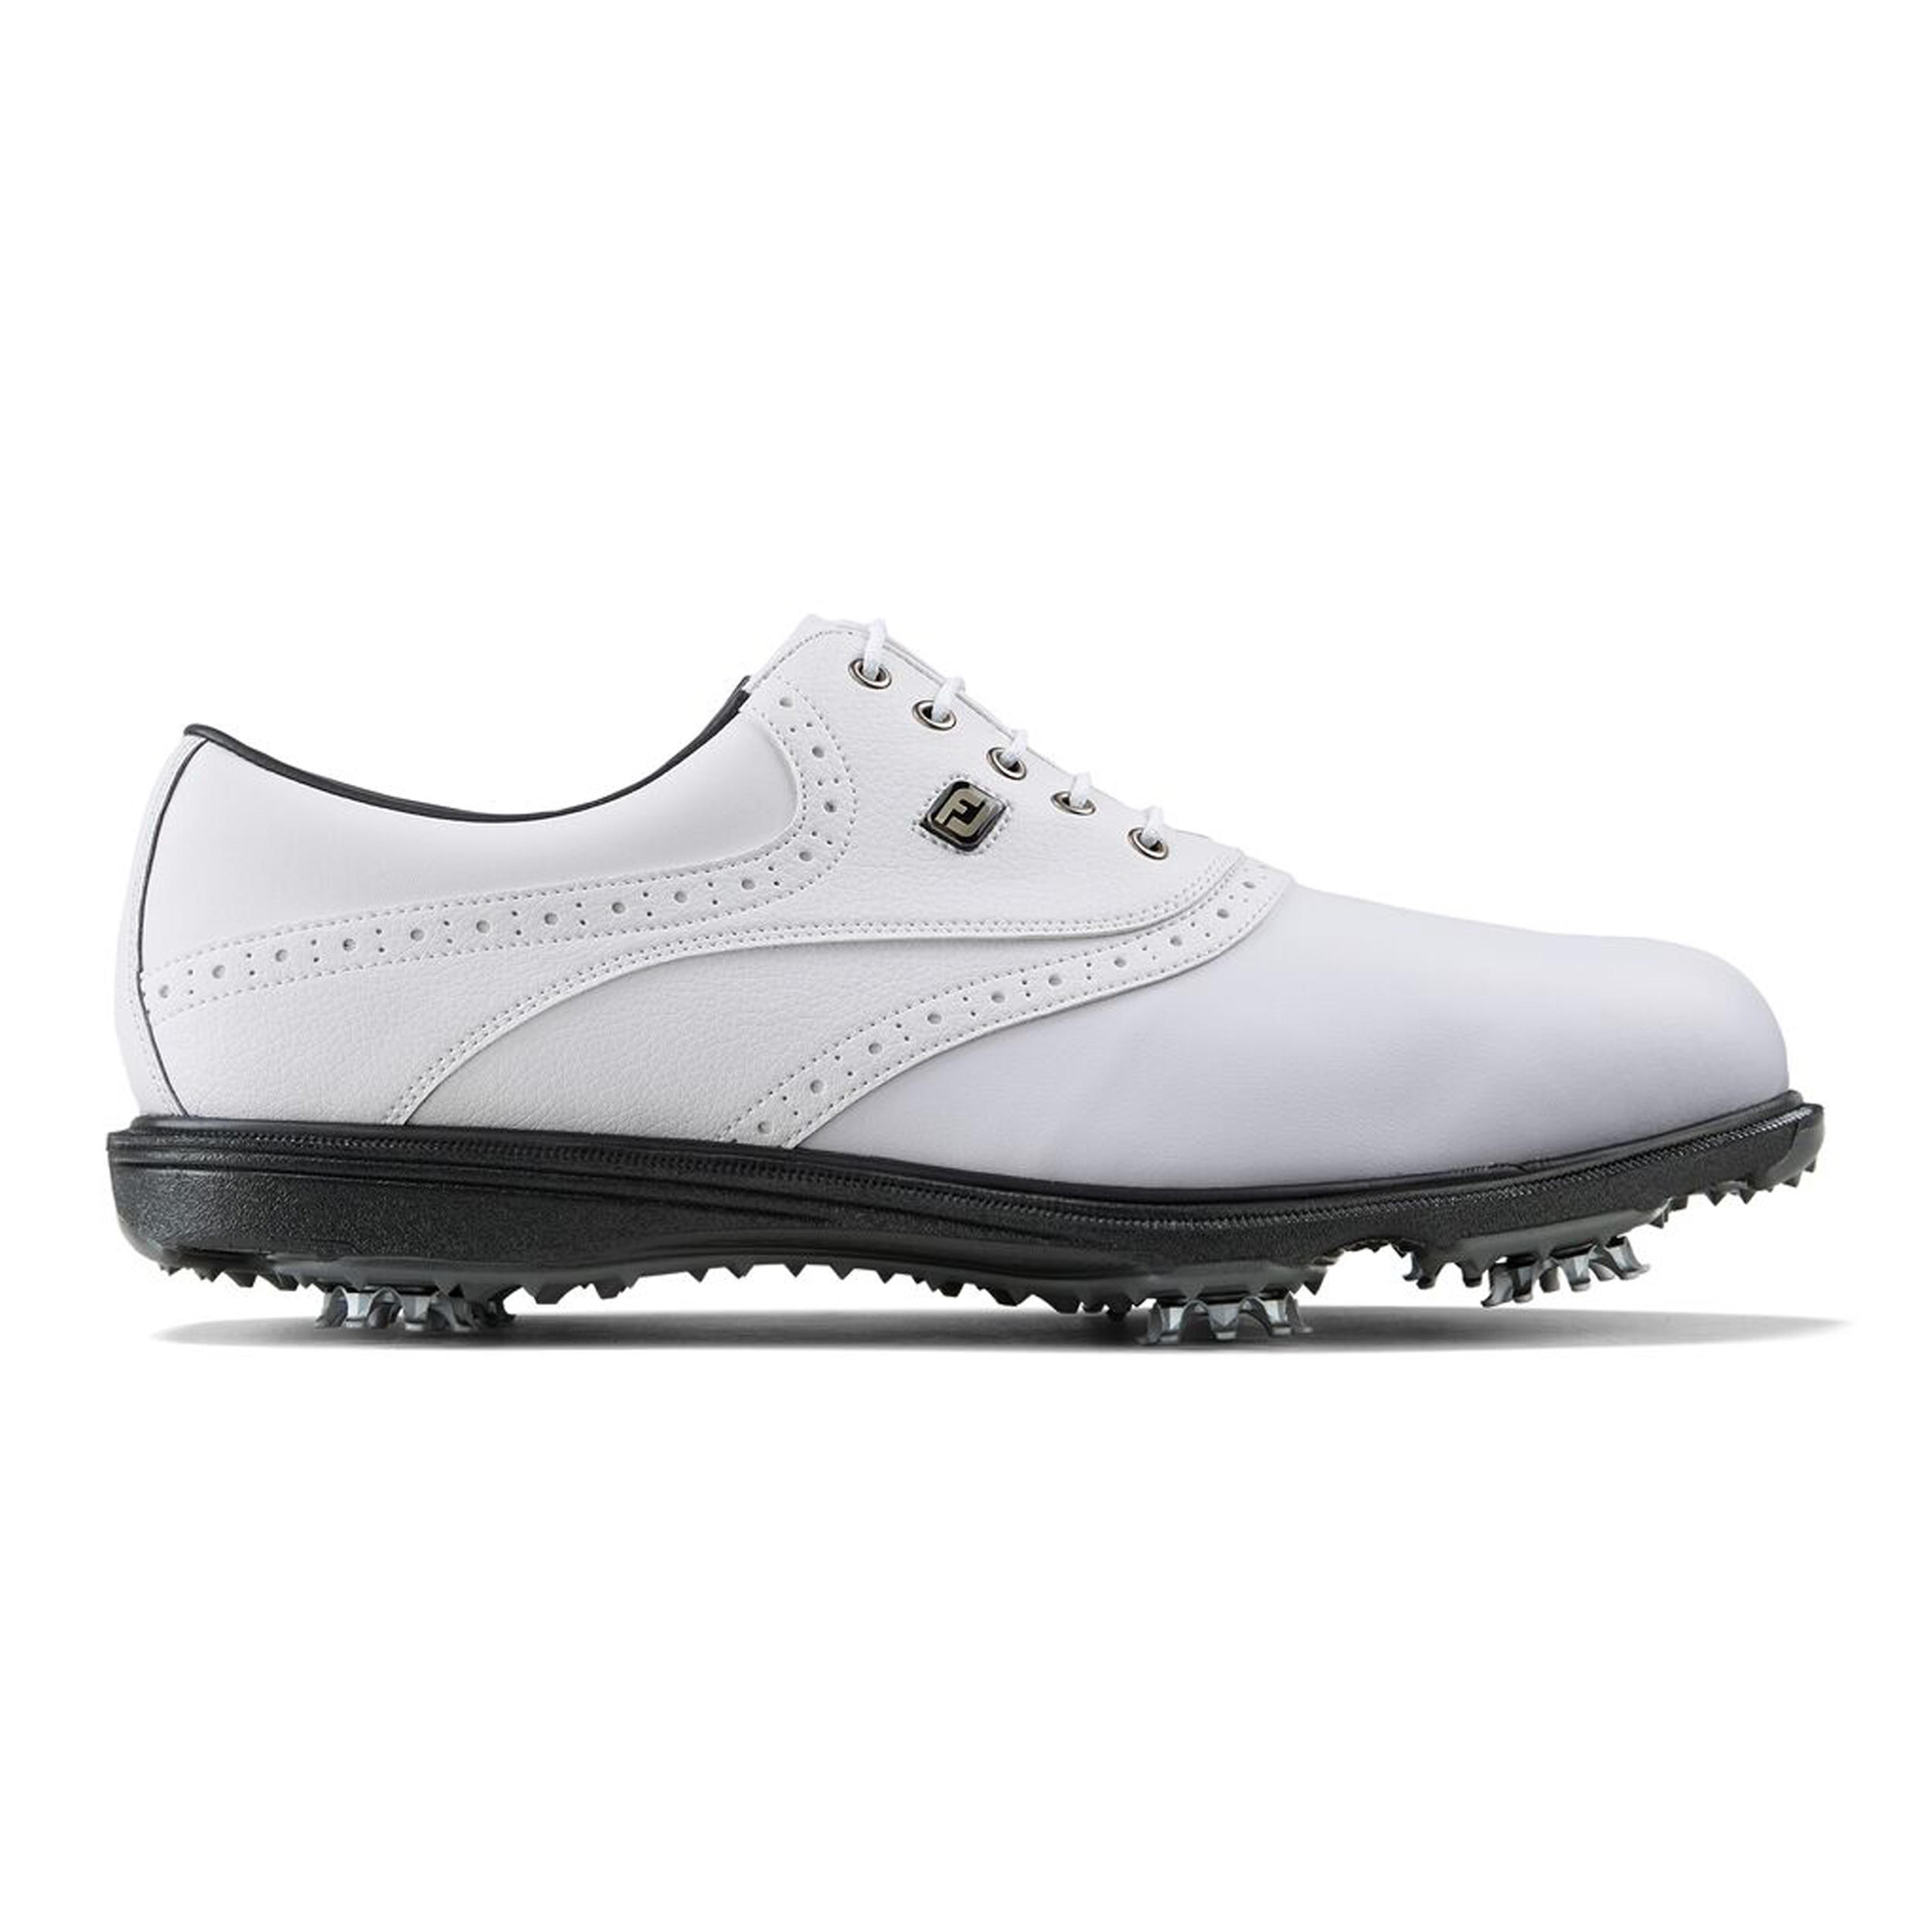 Scarpe golf uomo HYDROLITE 2.0 bianche FOOTJOY | DECATHLON